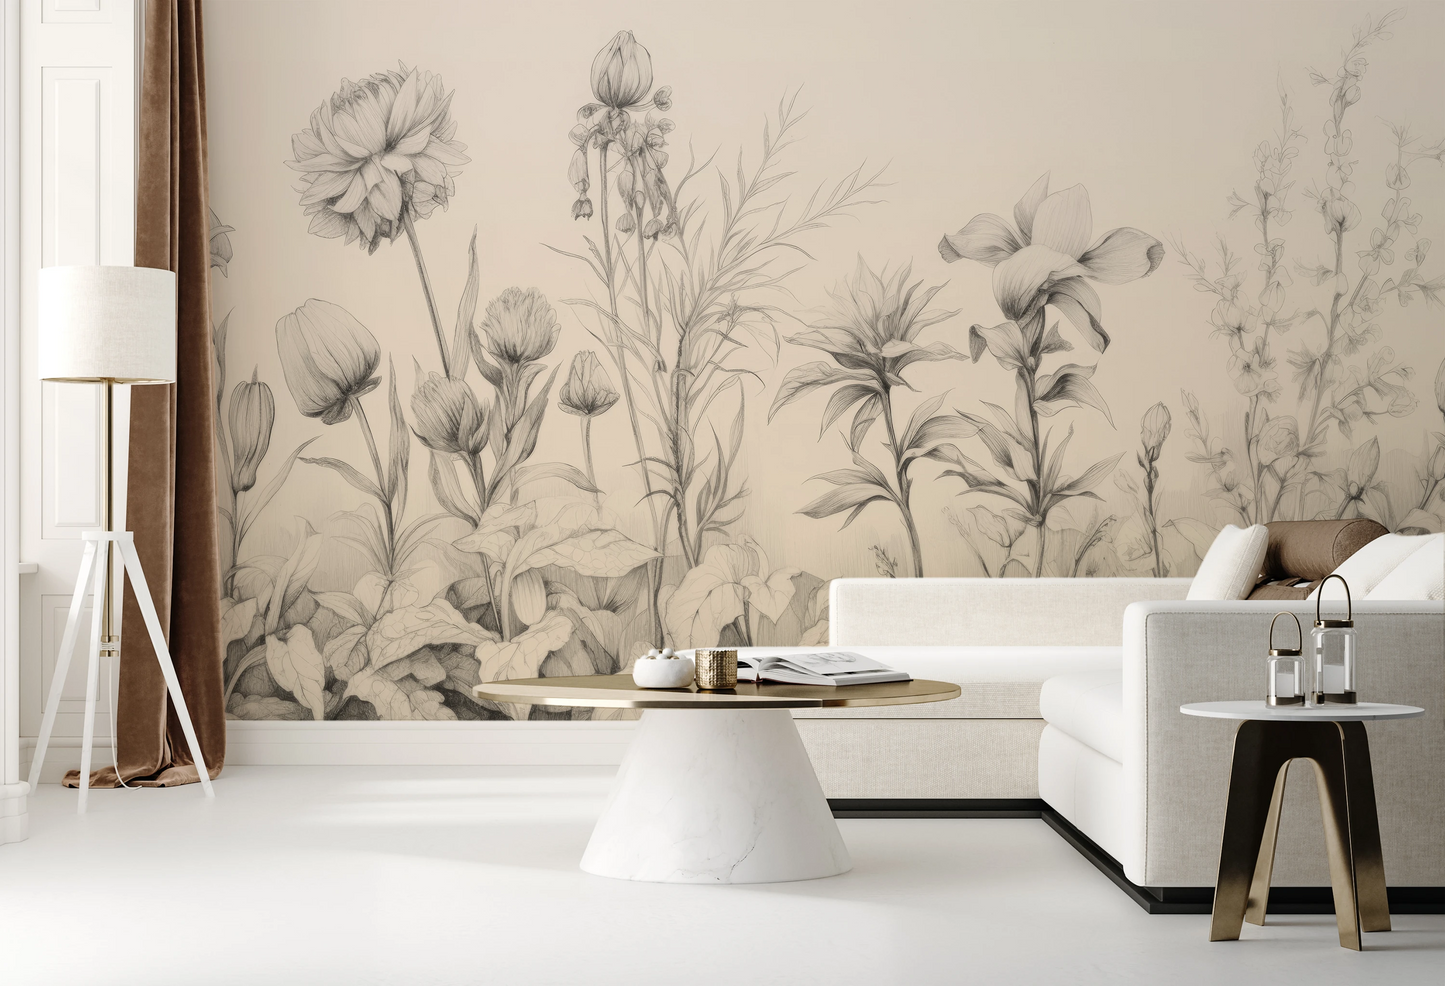 Wzór fototapety o nazwie Floral Tranquility pokazanej w kontekście pomieszczenia.